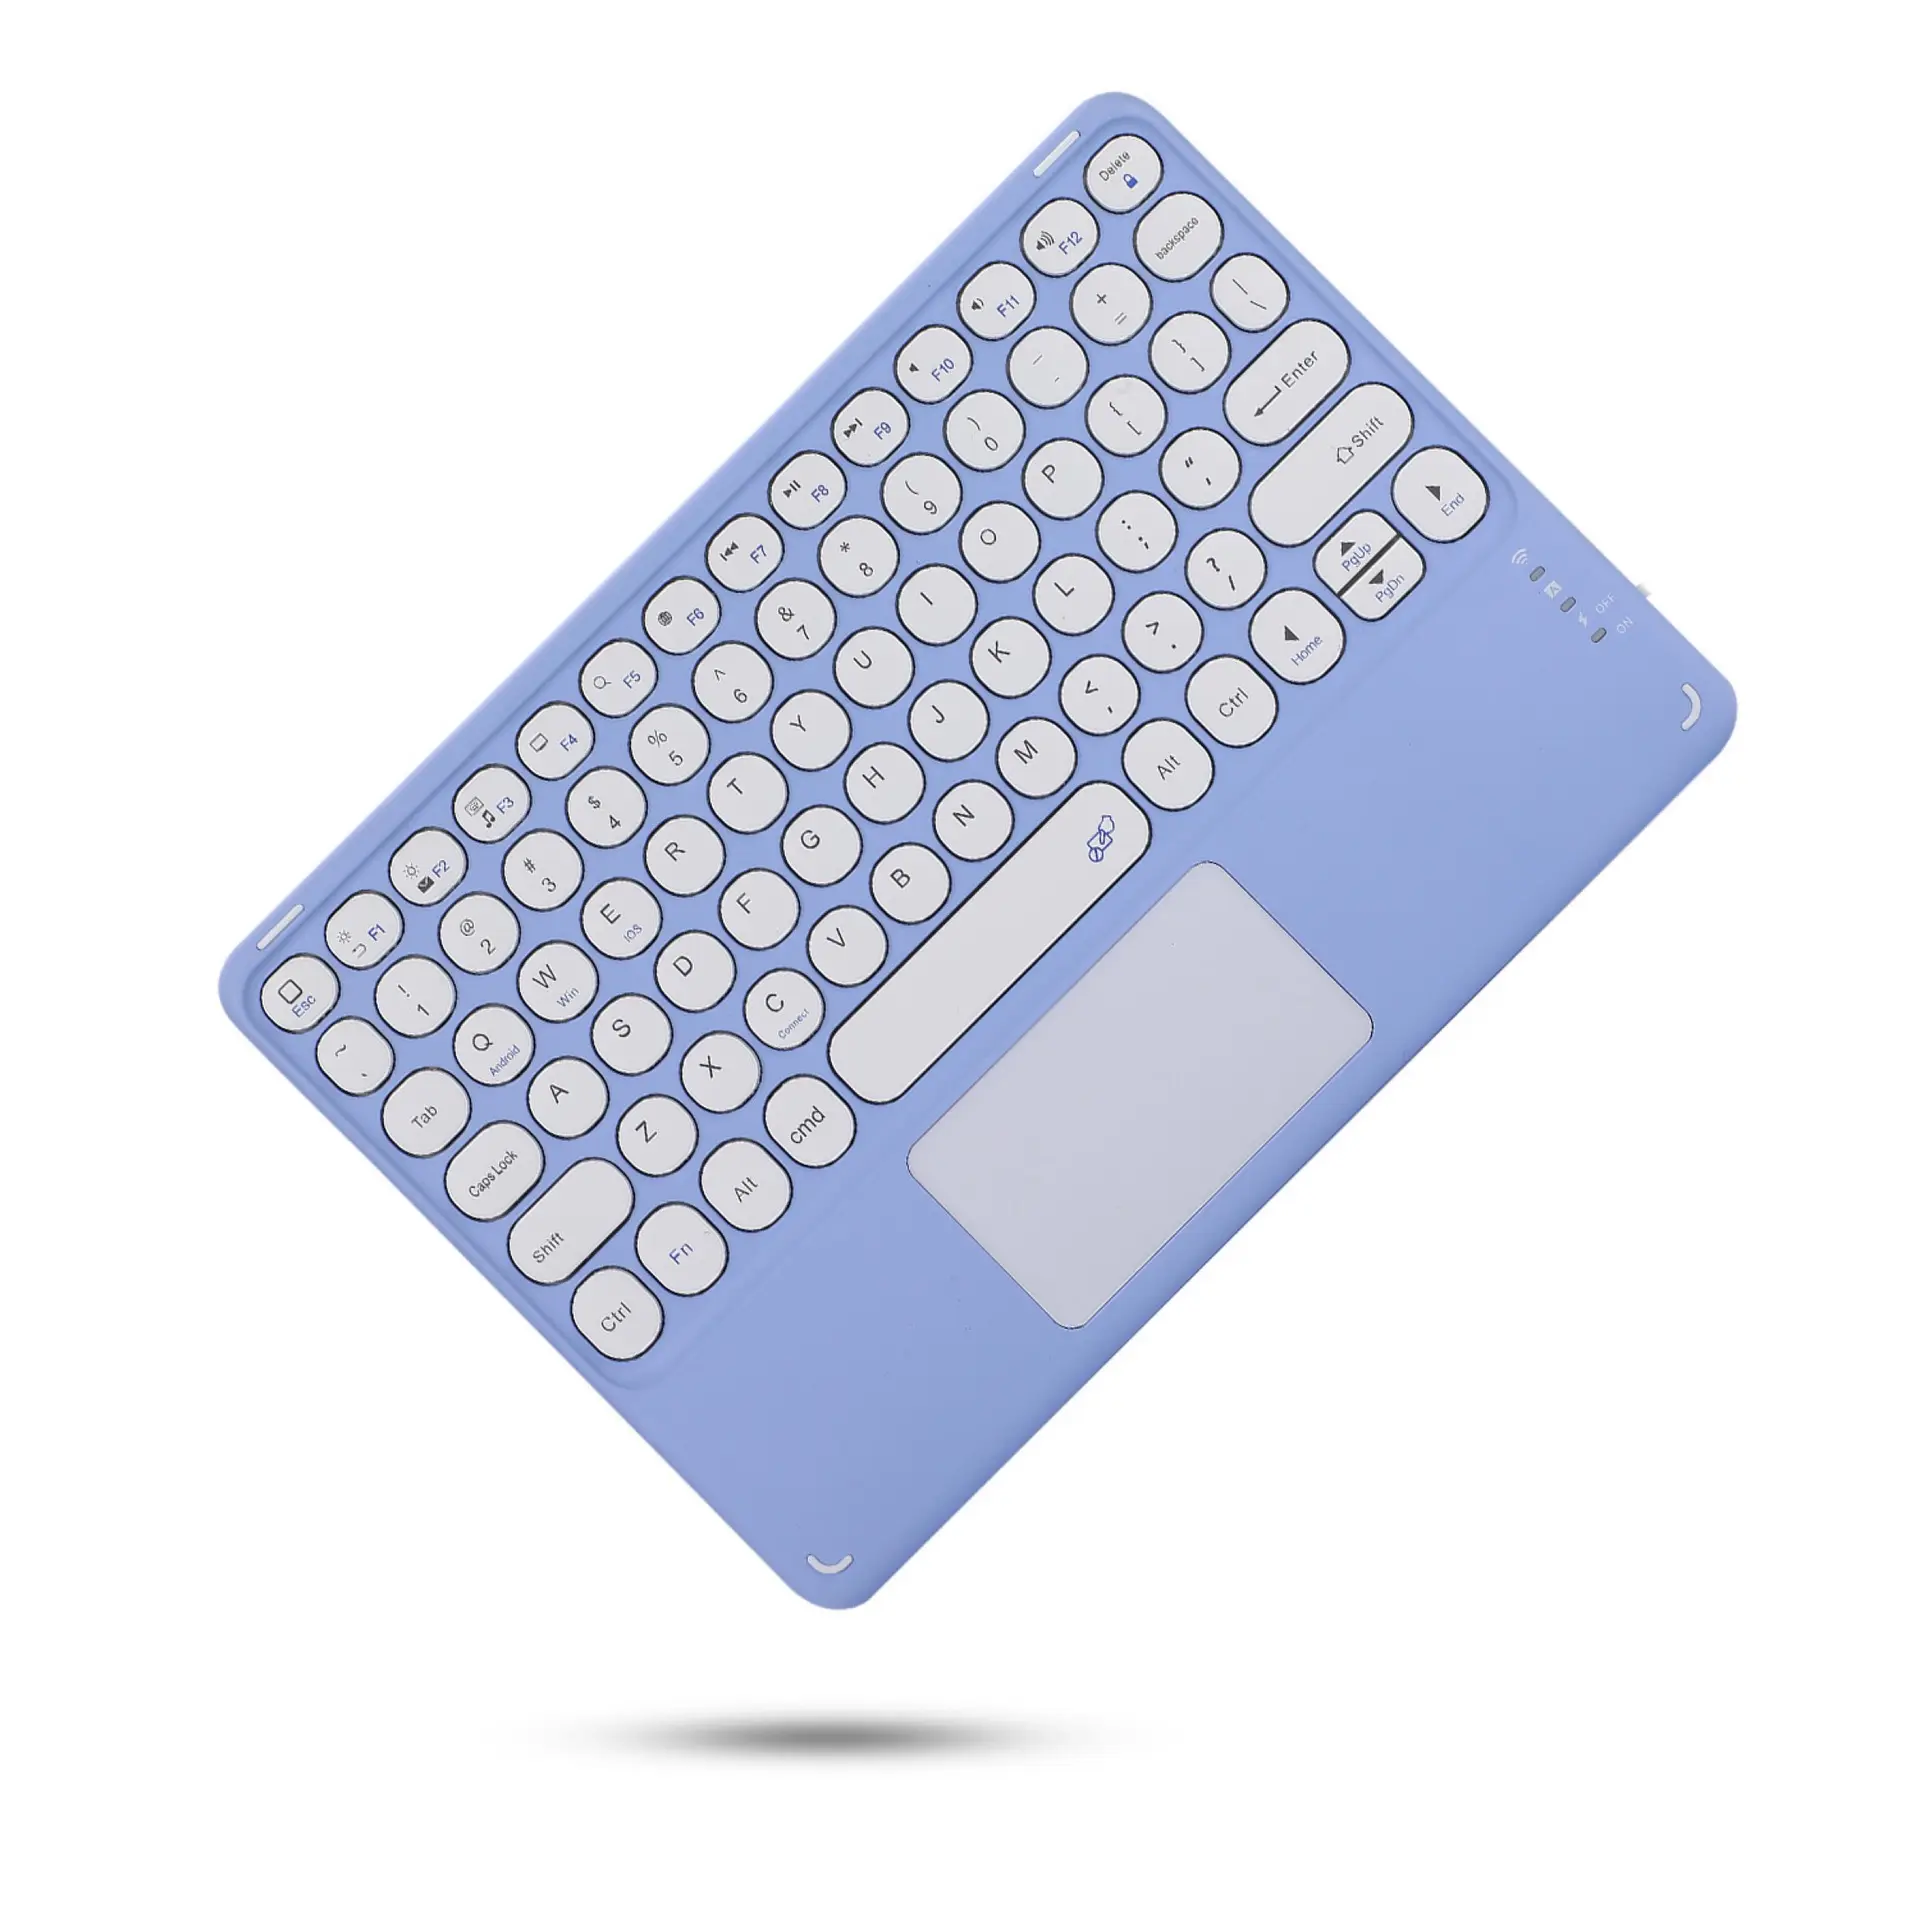 Beste Bluetooth Wireless-Tastatur mit Touchpad für iPad Tablet PC Externe kleine Tastatur für Laptop Pink Keyboard Wireless